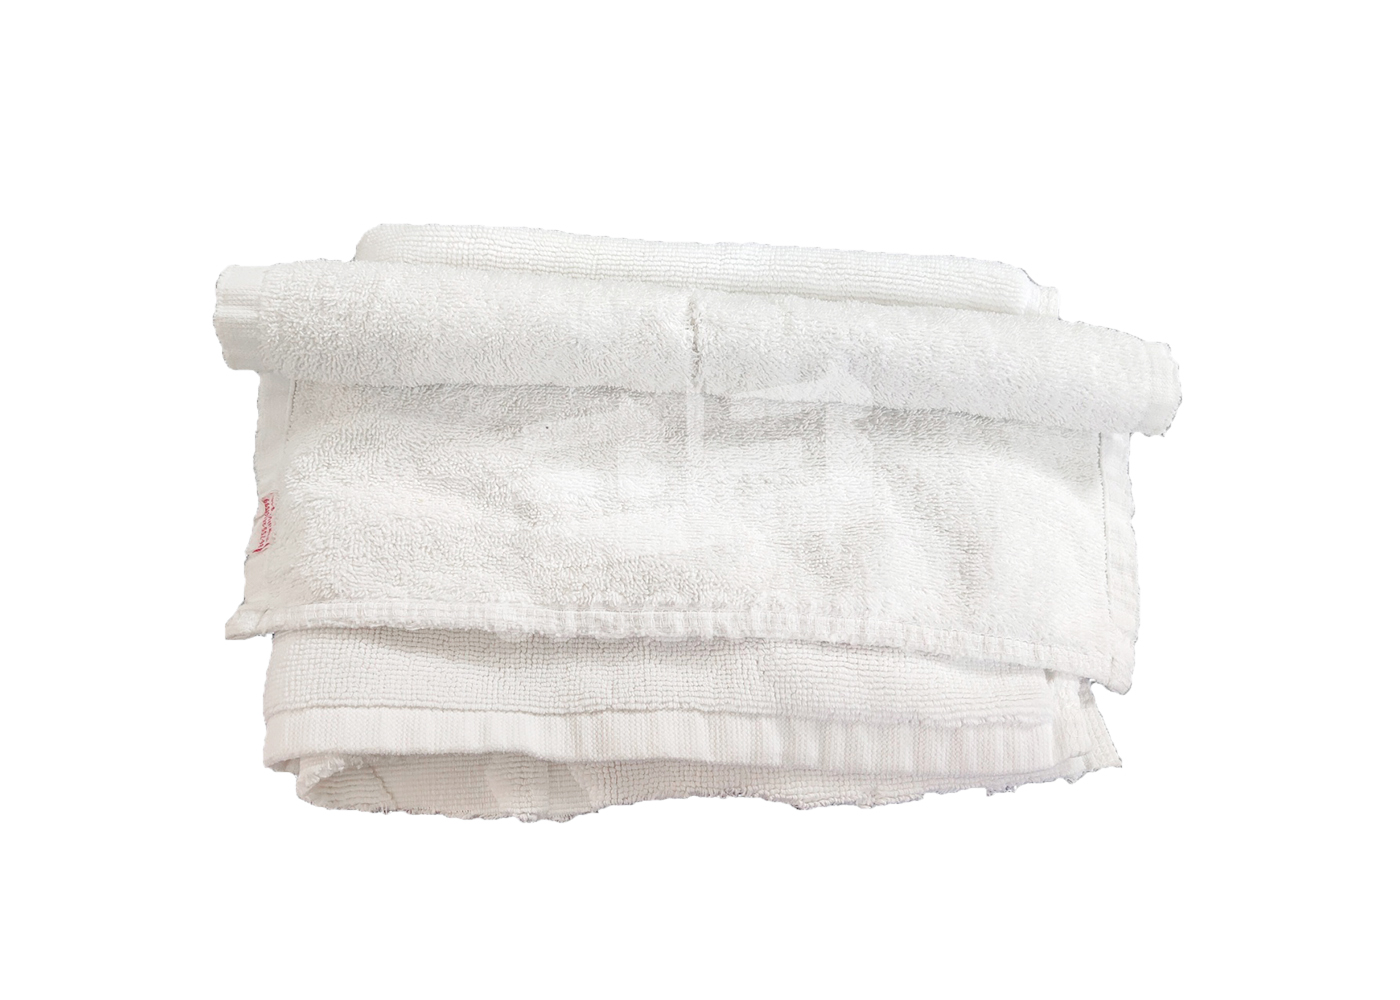 白色毛巾类抹布-白色裁剪浴巾混合